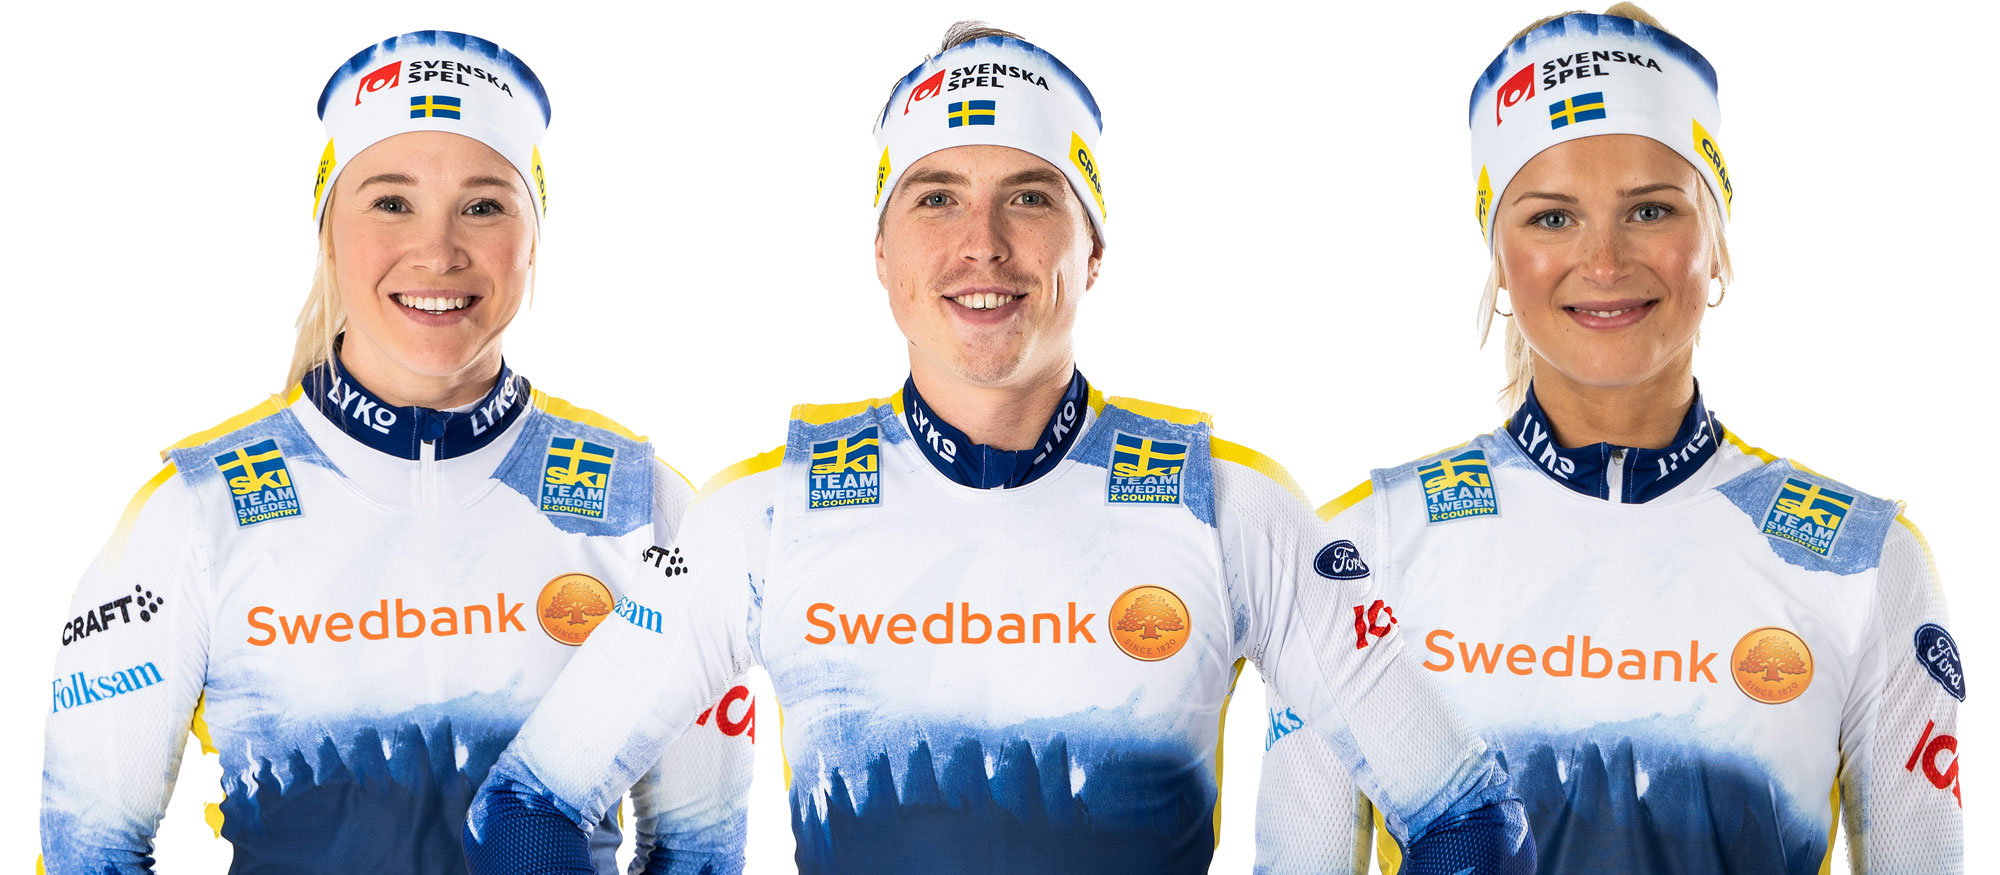 Tre längdskidåkare med Swedbanks logga